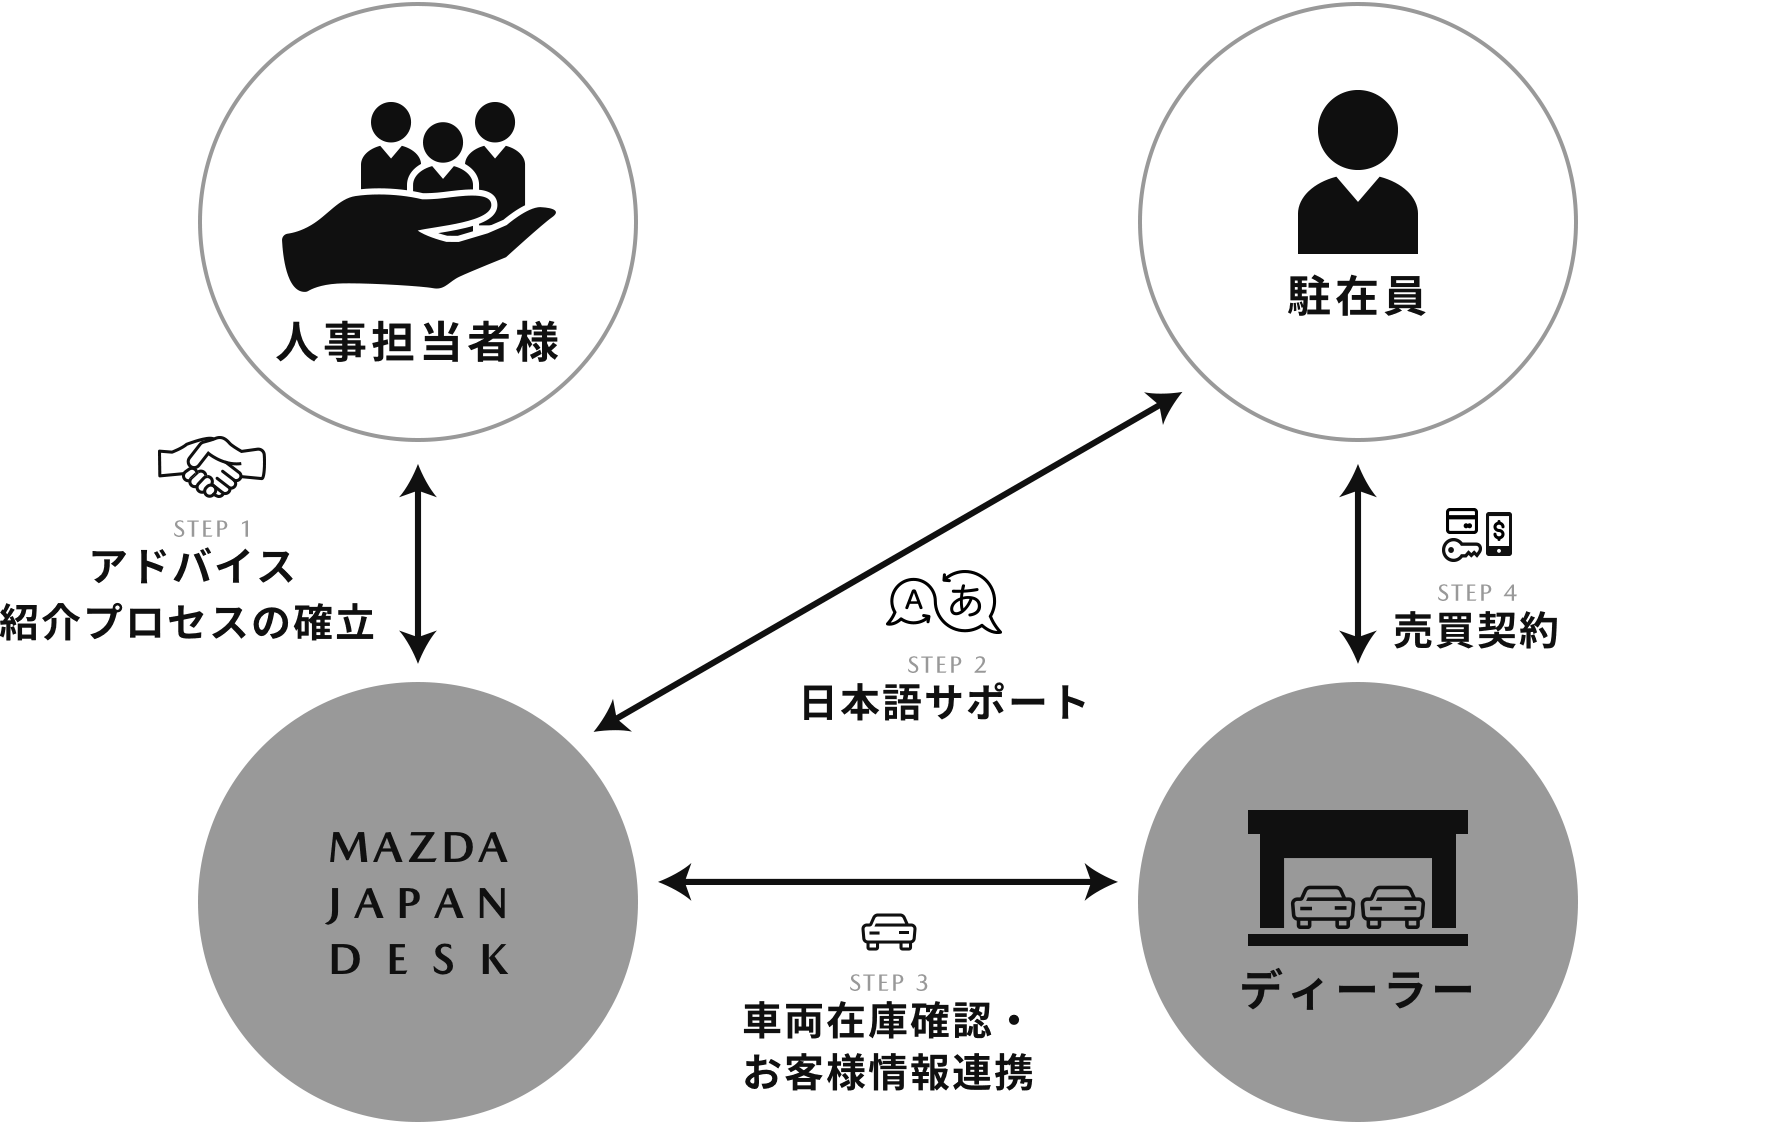 お客様、MAZDA JAPAN DESK 及びディーラーとの関係性